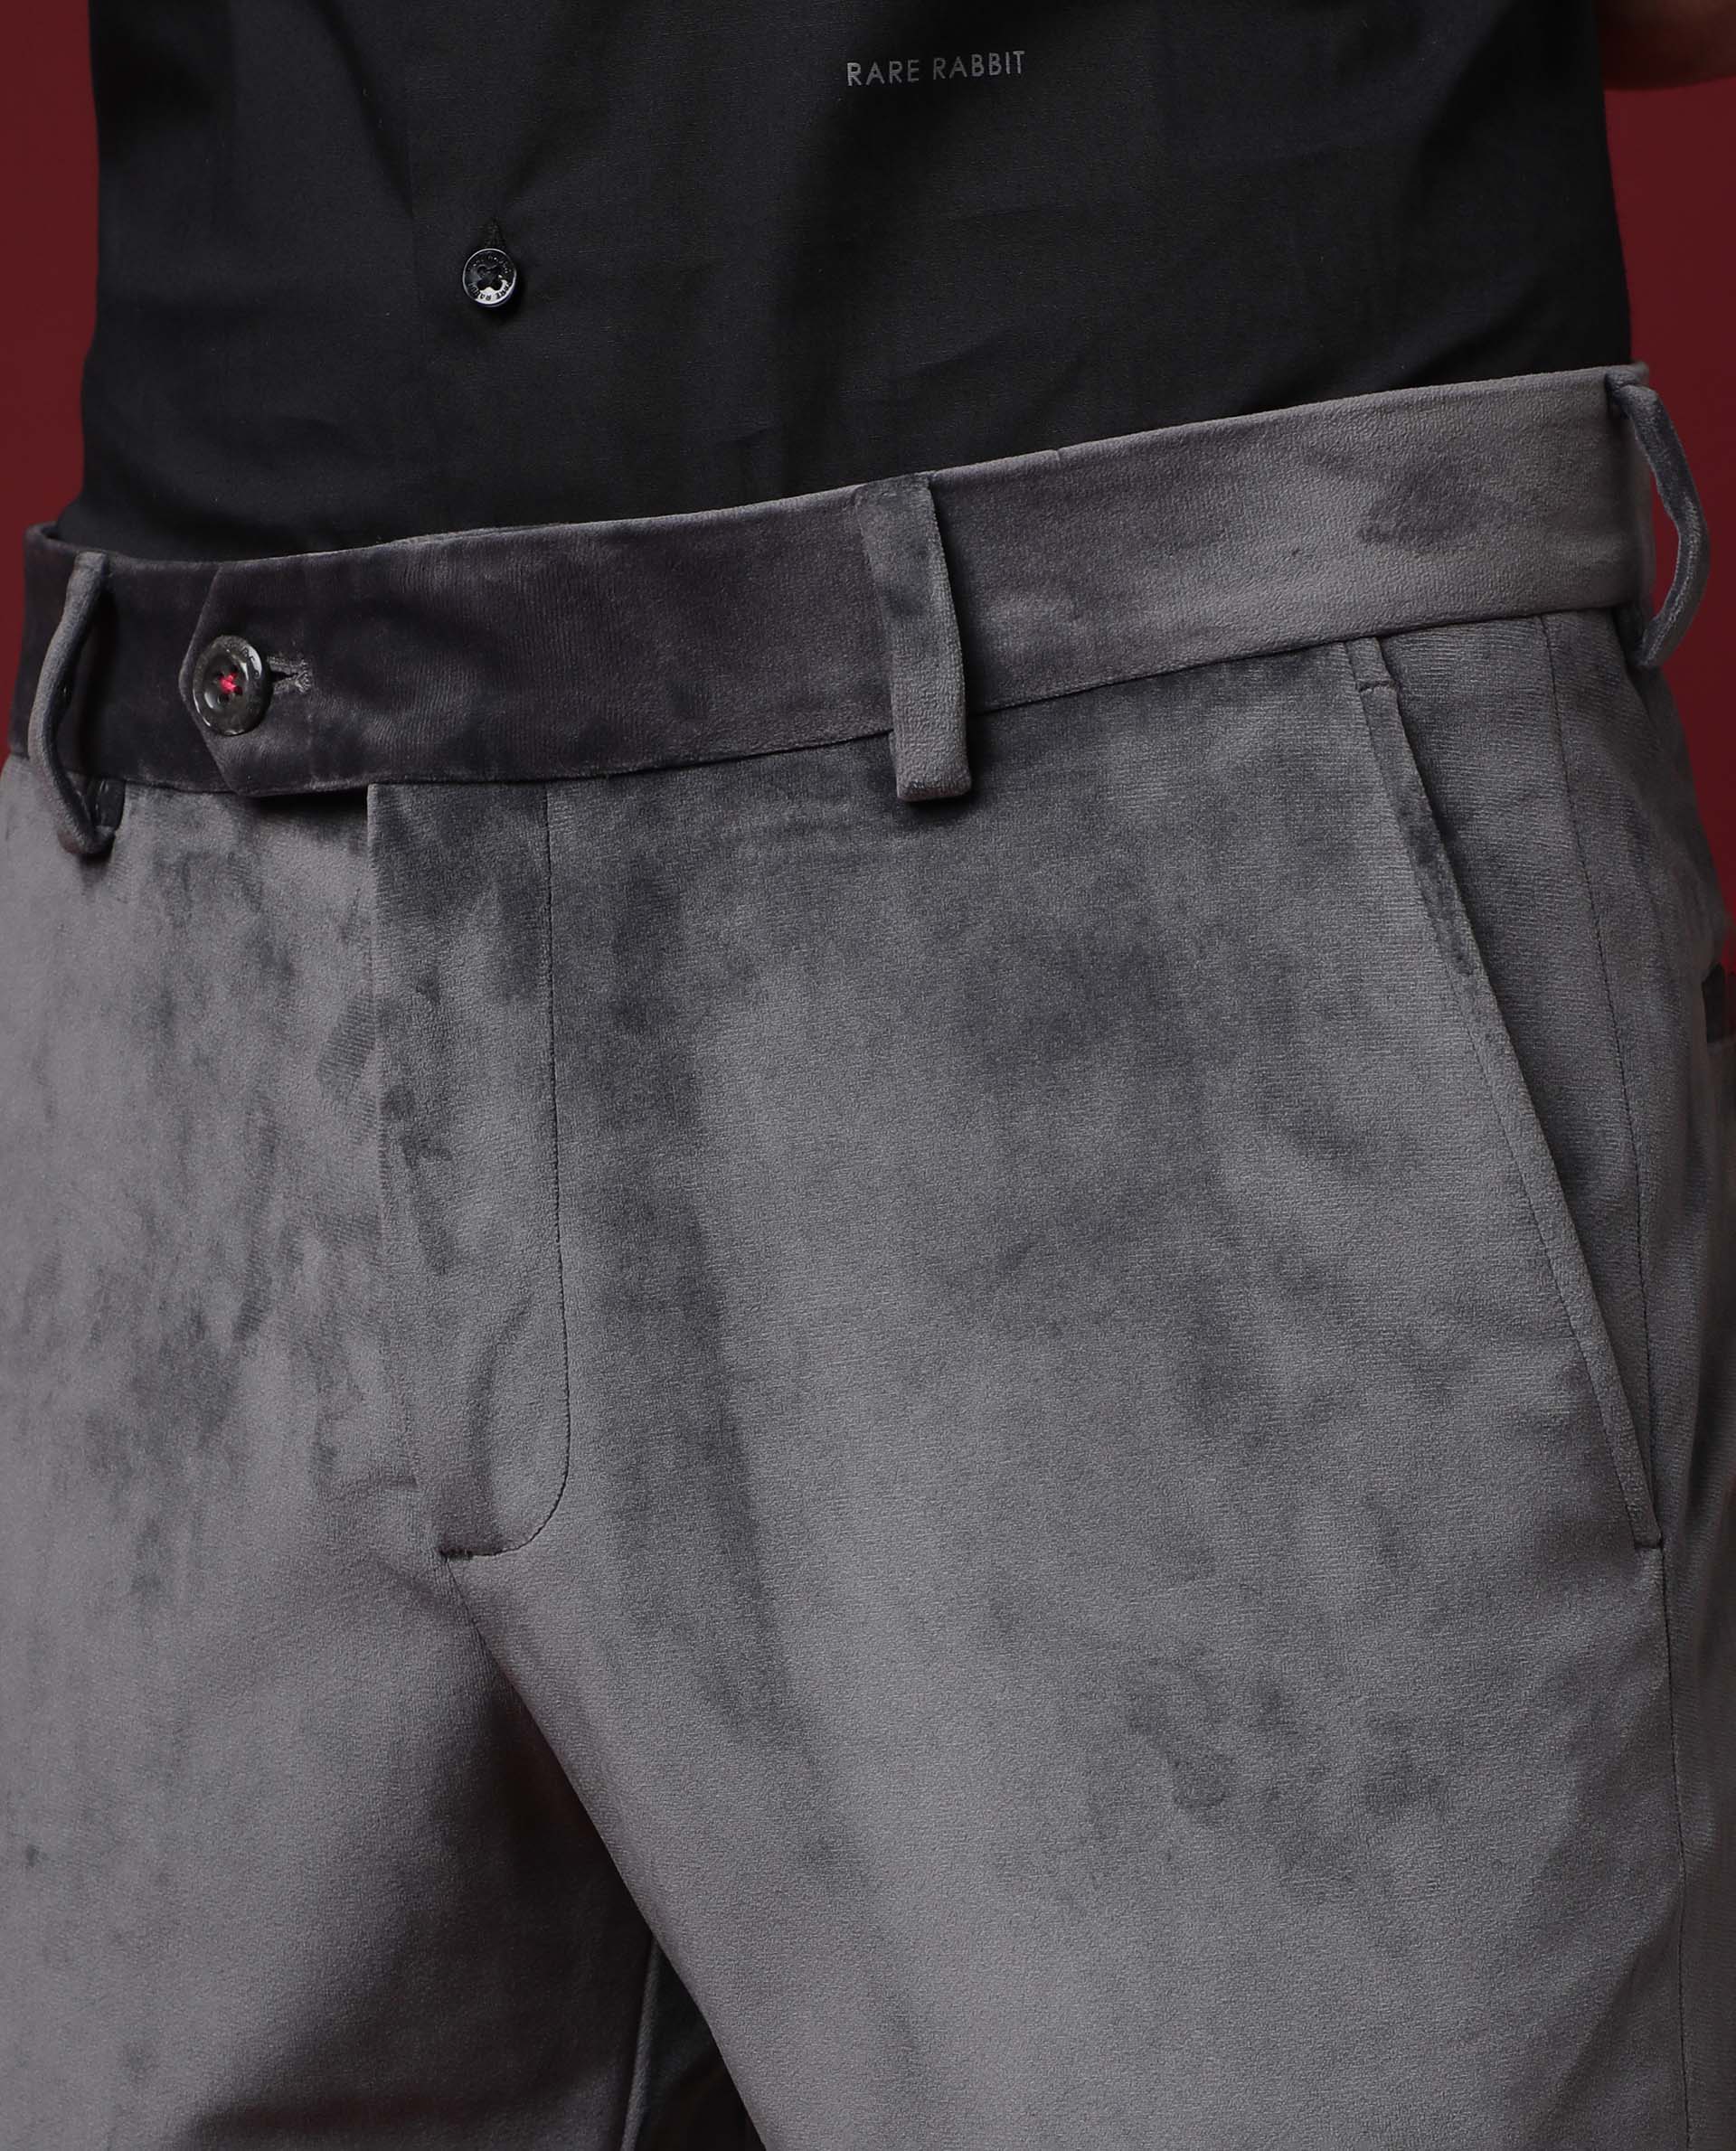 Bsettecento mens trousers in checked velvet  Italian mens clothing  online store